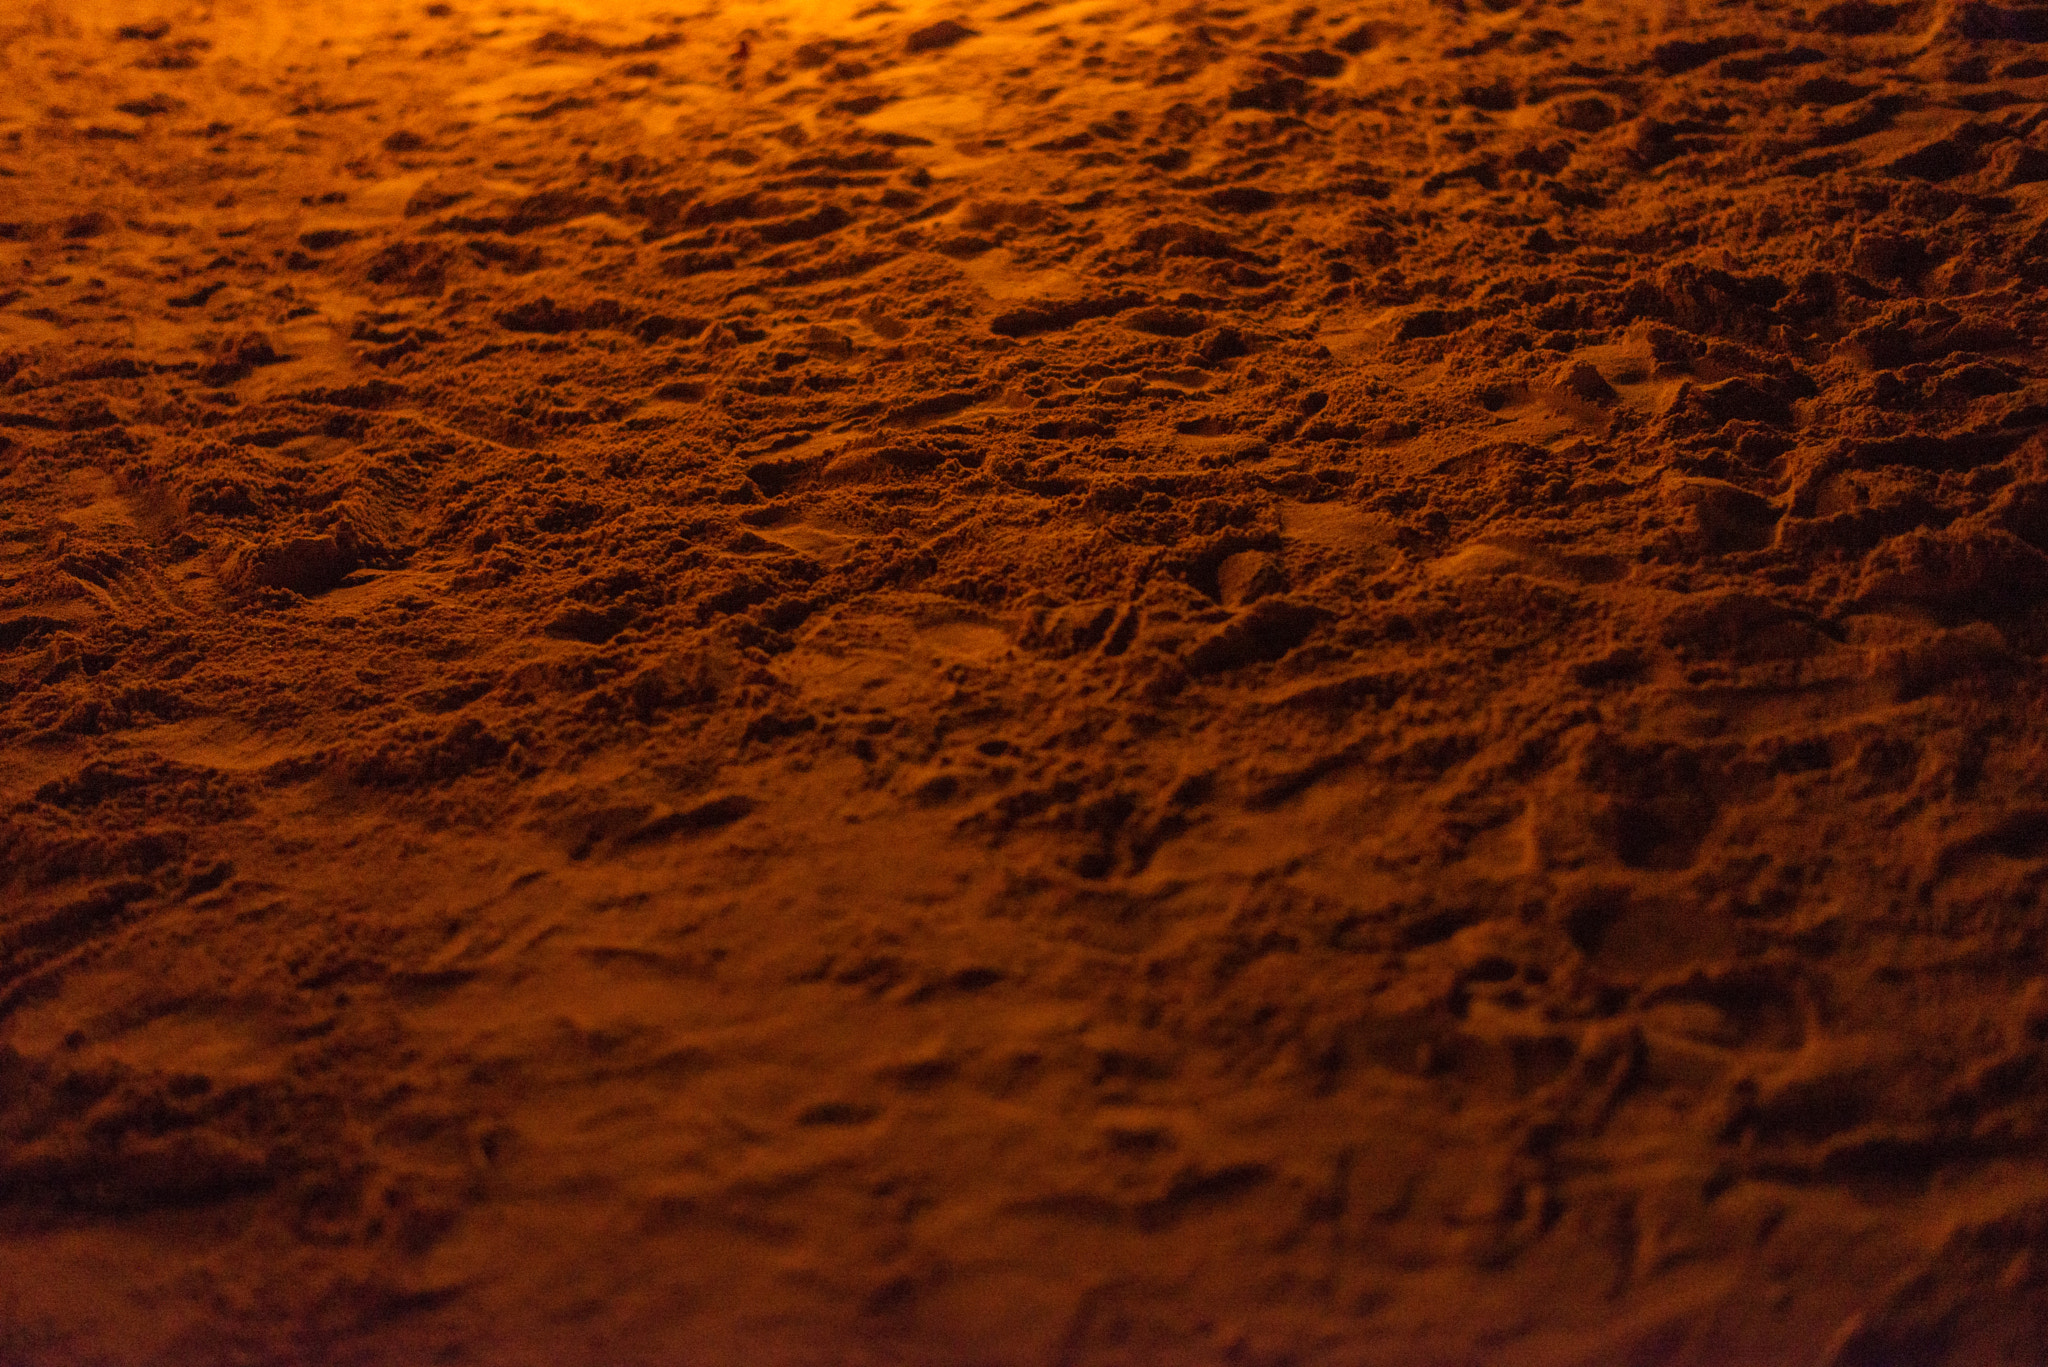 Nikon D610 + Nikon AF-S Nikkor 58mm F1.4G sample photo. Sand at night photography